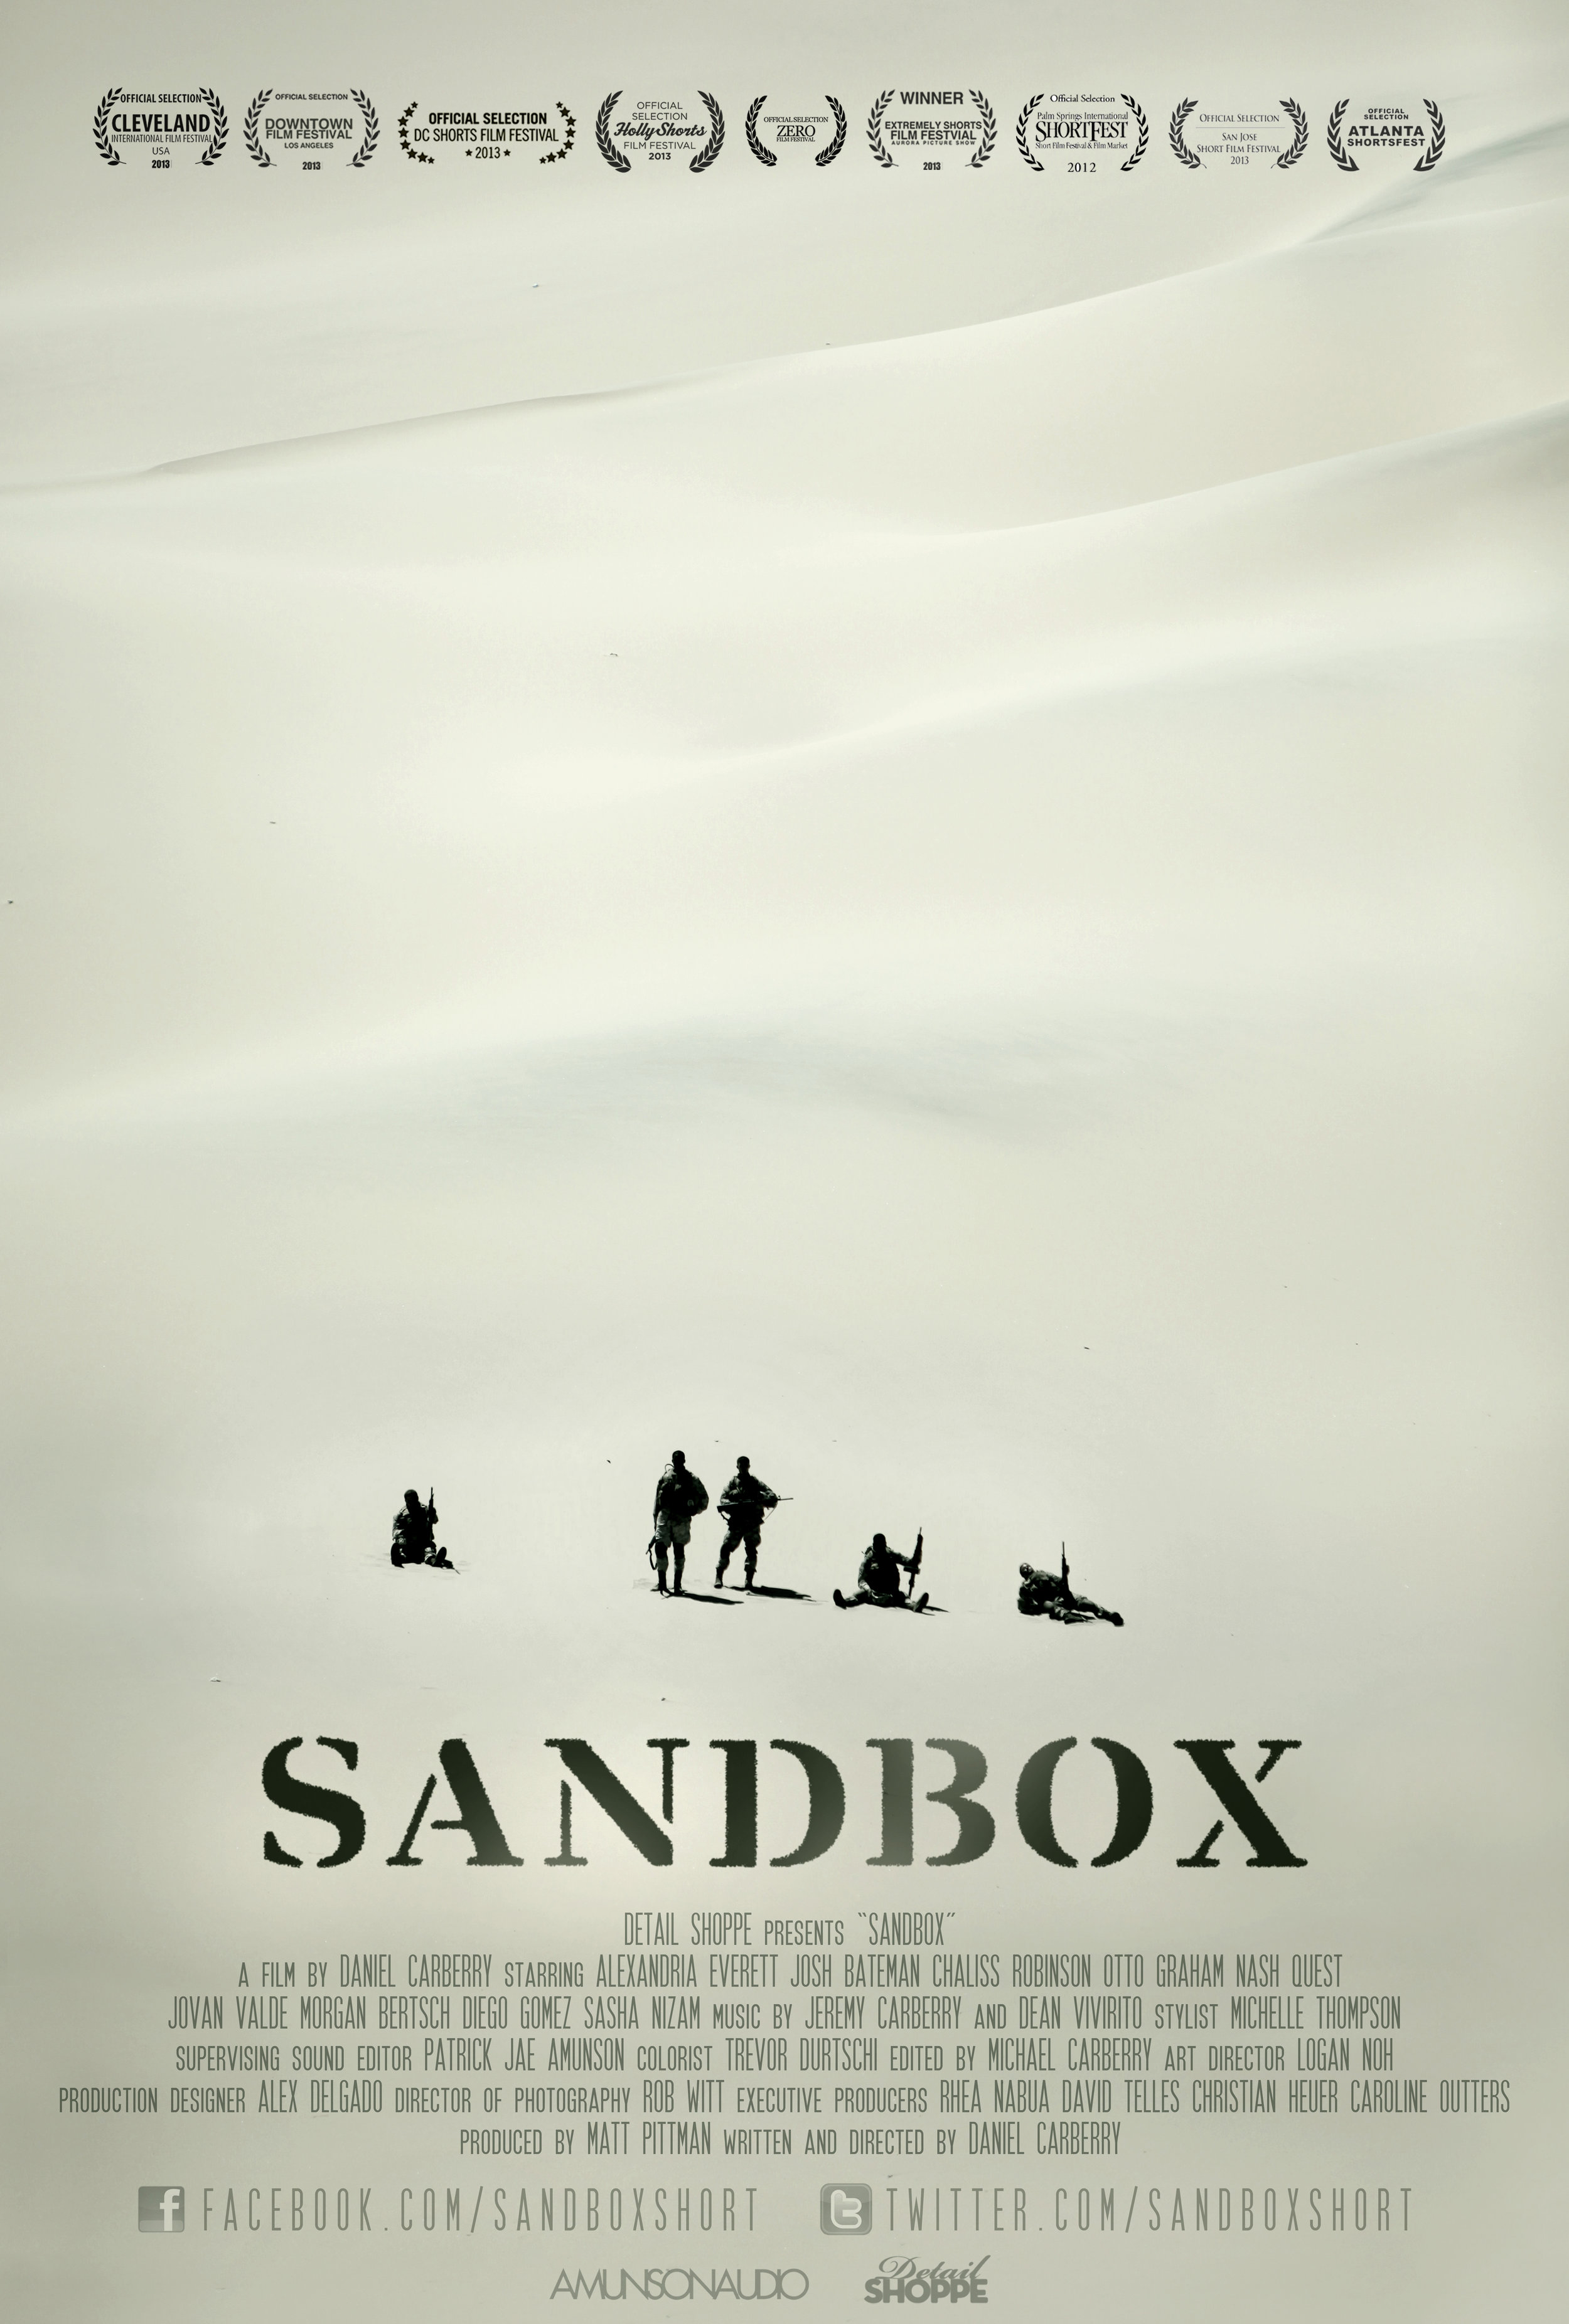 Sandbox Offical Poster wreaths.jpg